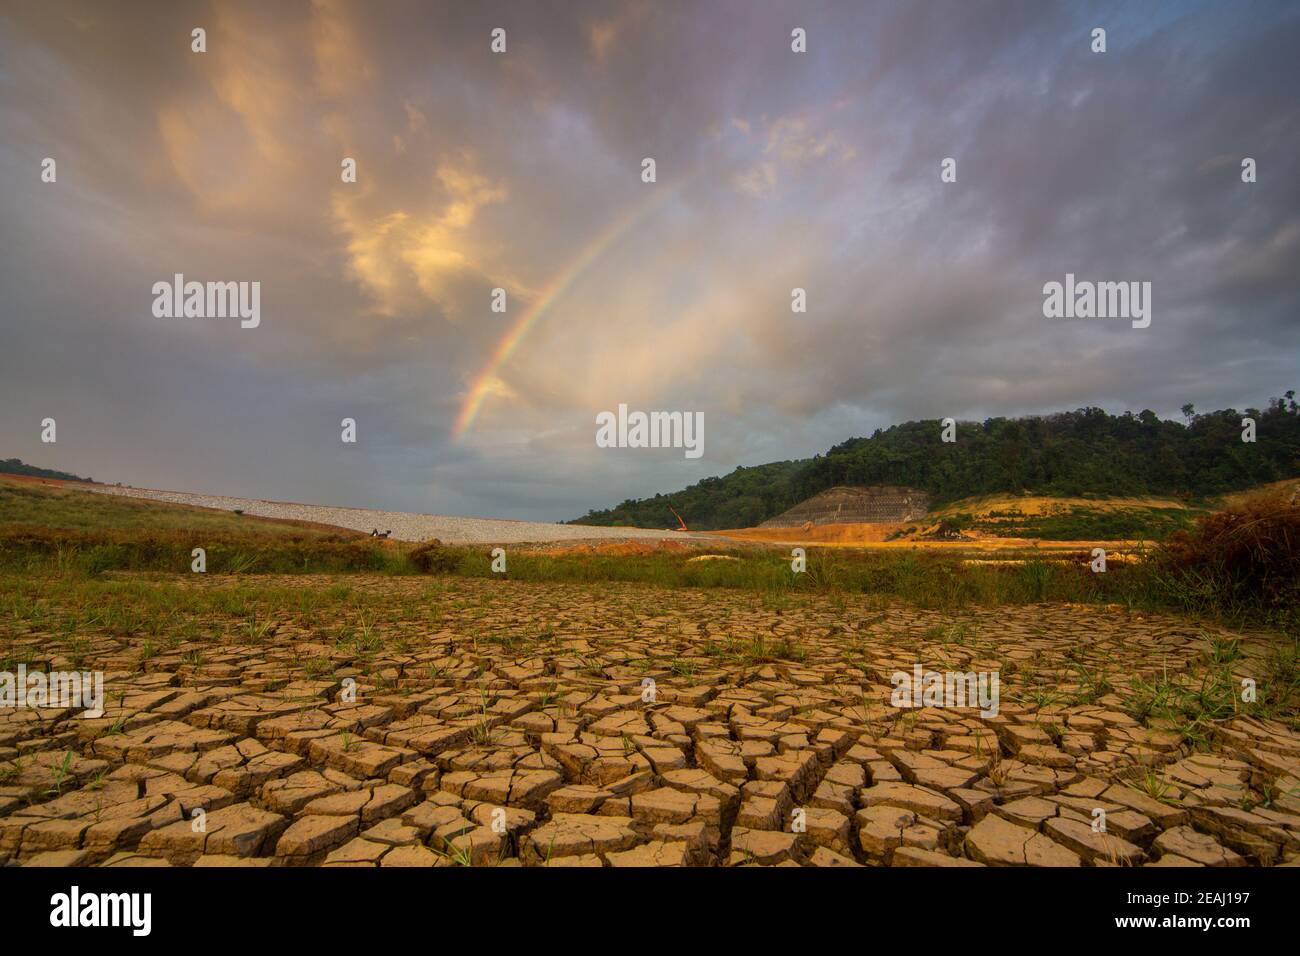 Craquer des terres sèches dans le barrage de Mengkuang, Penang, Malaisie pendant la période de sécheresse Banque D'Images